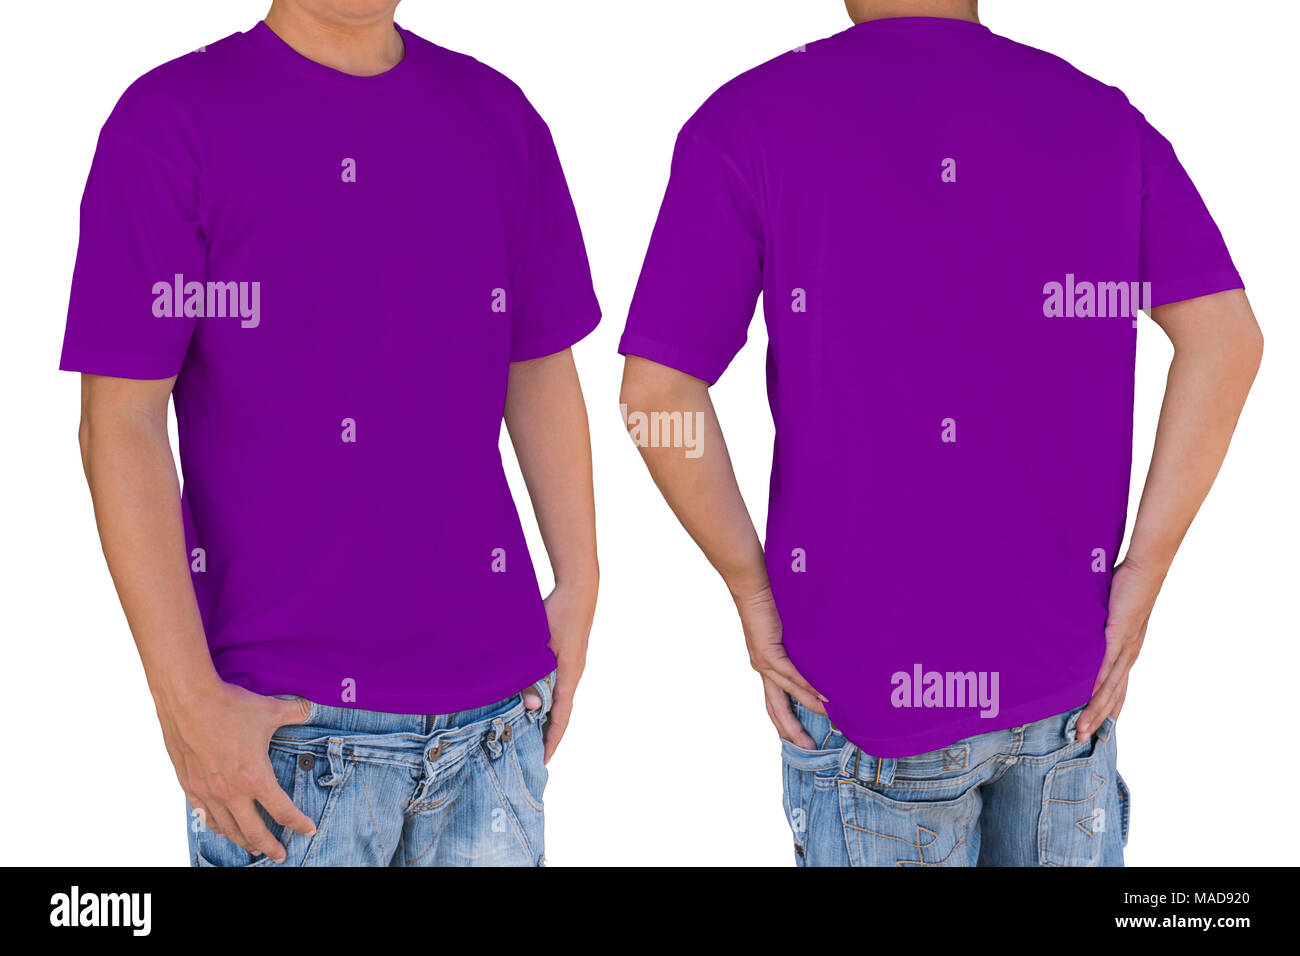 Hombre vestidos de blanco camiseta púrpura con trazado de recorte, vista frontal y posterior. Plantilla para insertar logo, patrón o ilustraciones. Foto de stock